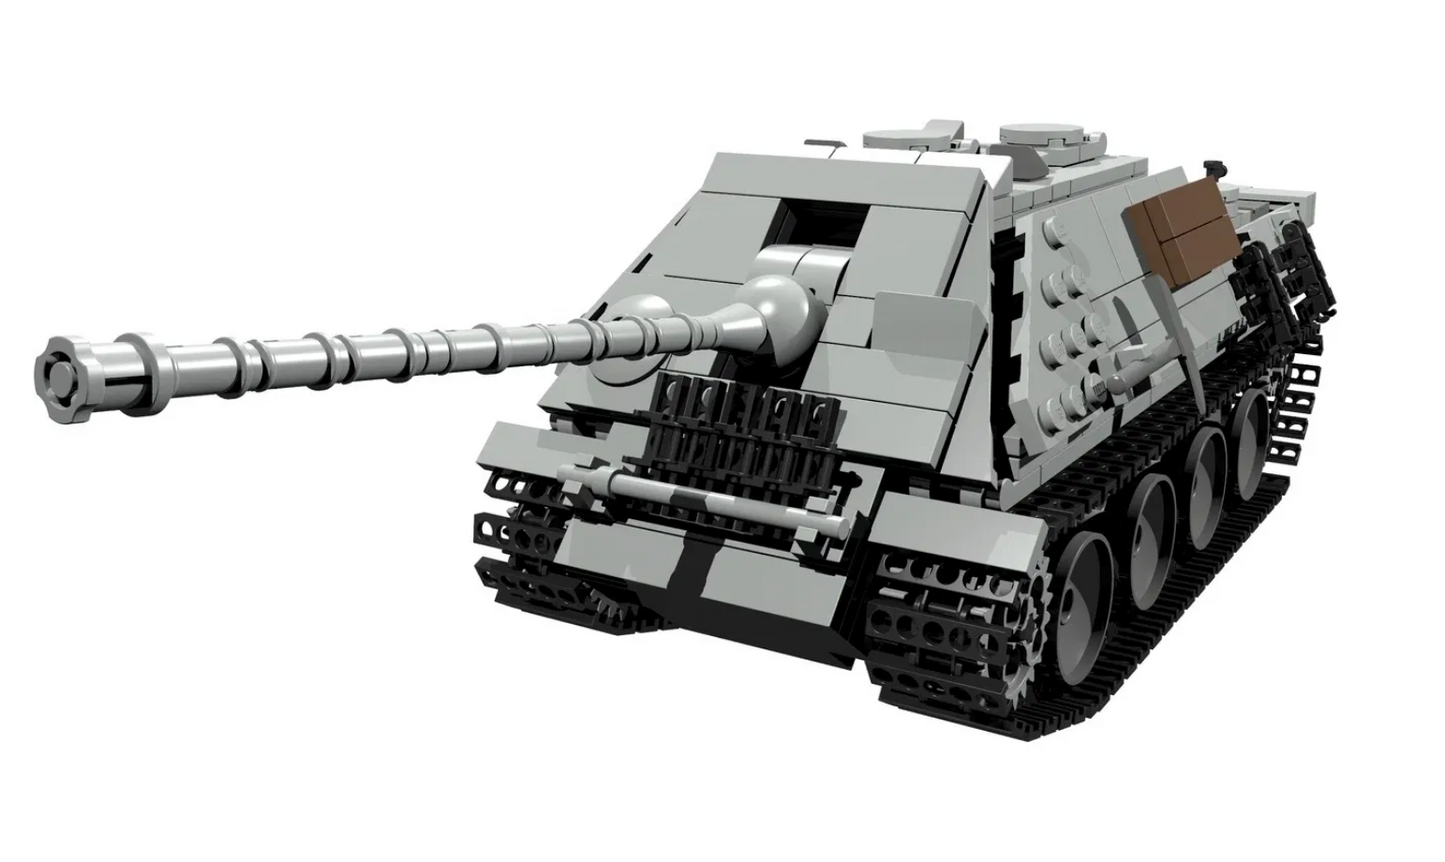 WW2 German Jagdt Panther Tank Destroyer - MOMCOM inc.